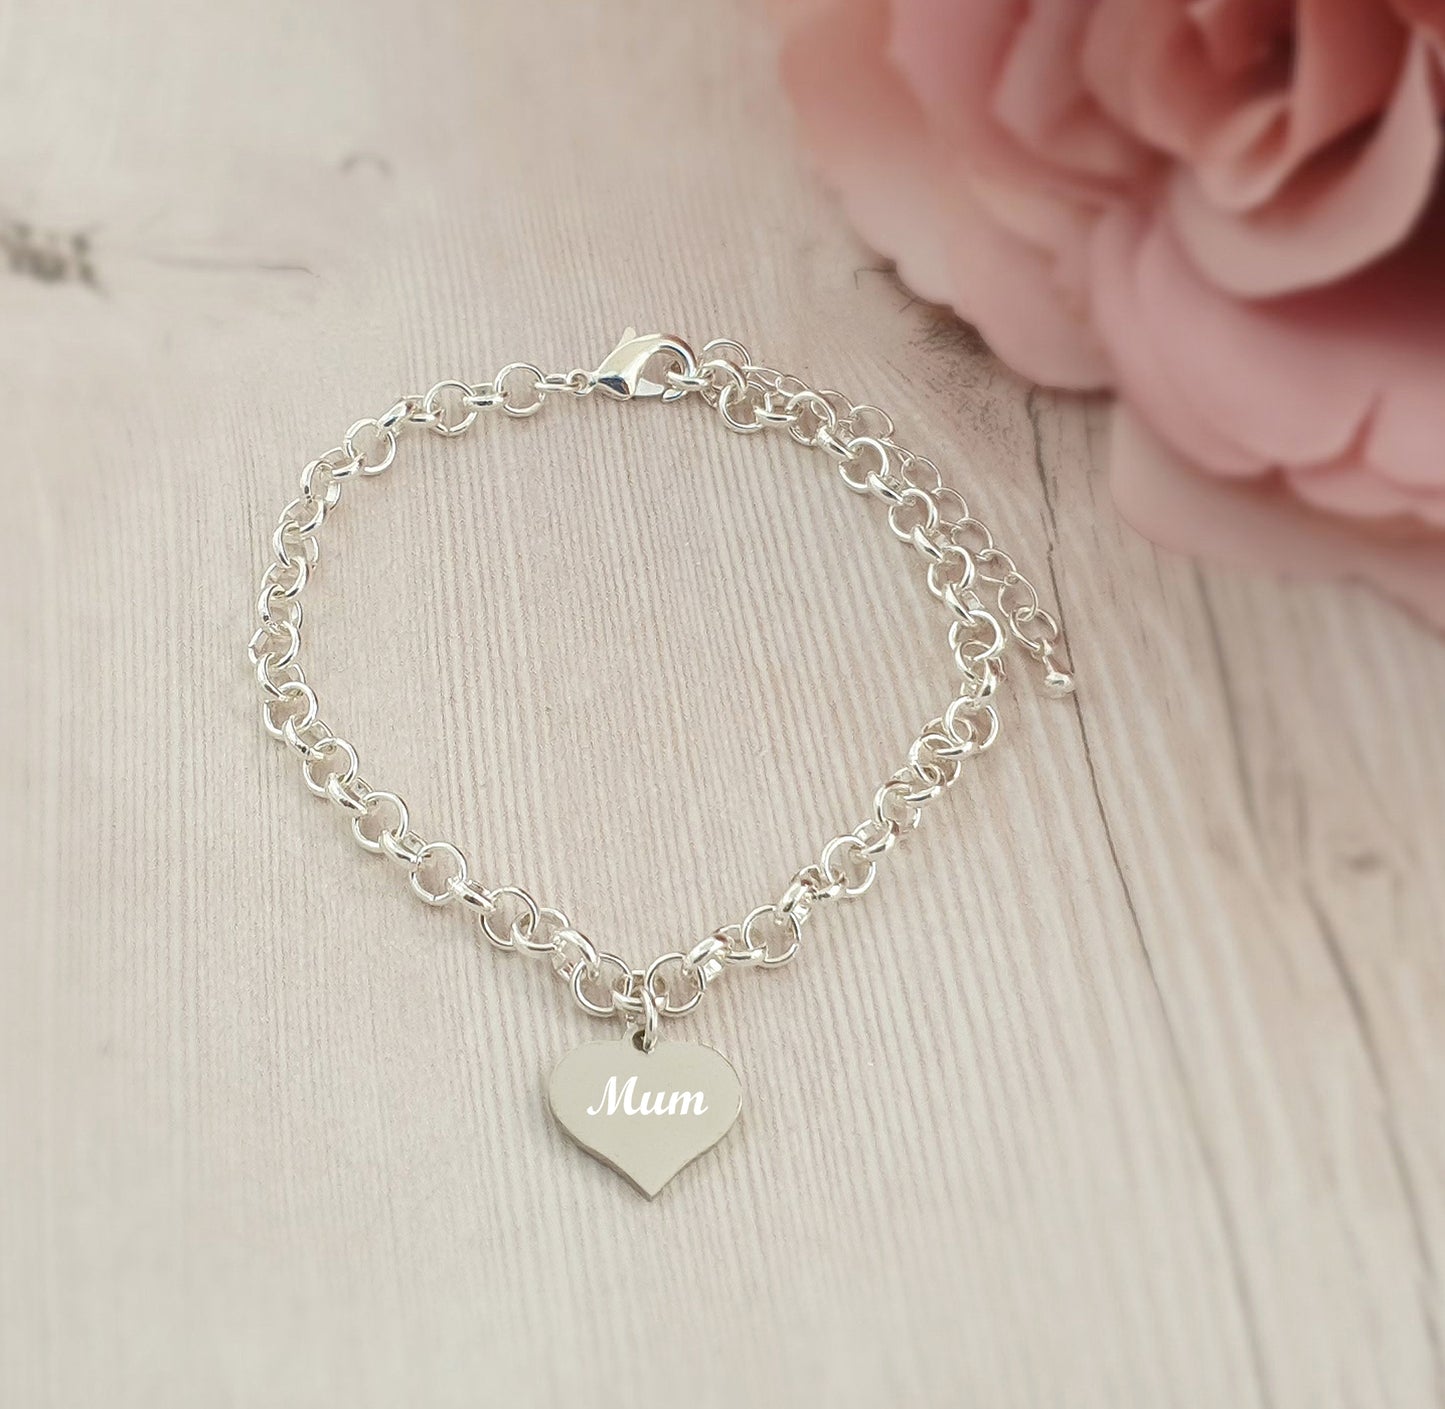 Mum Engraved Heart Charm Link Bracelet, Gift for Women